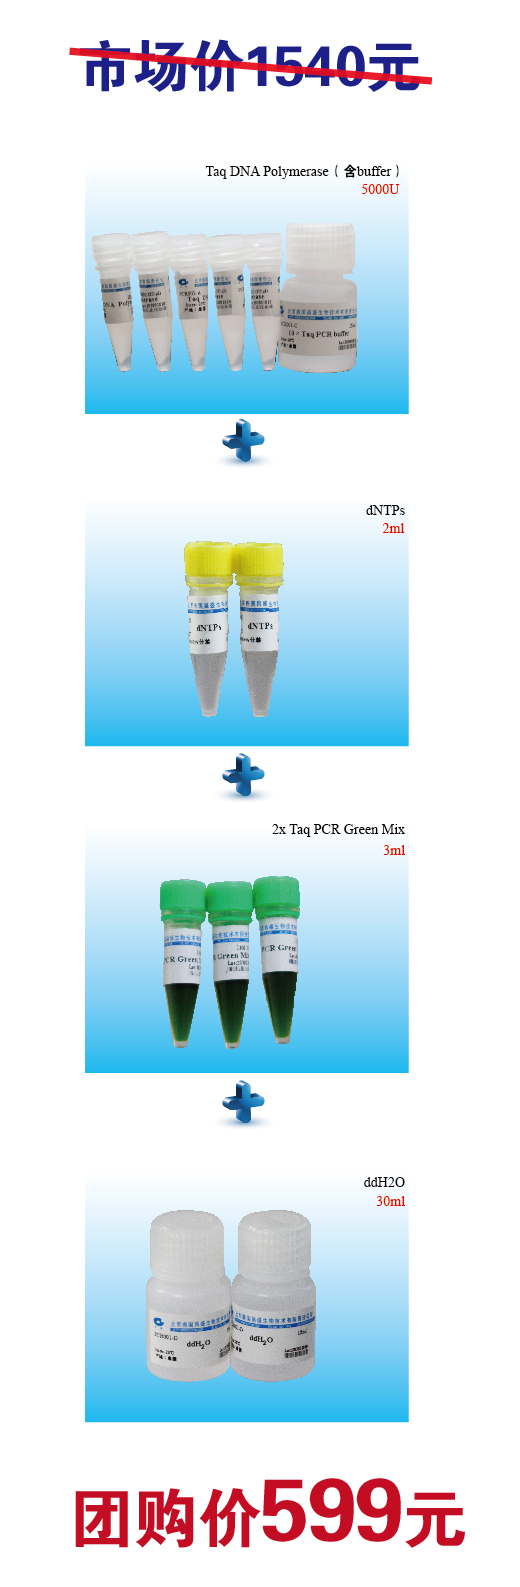 鼎国昌盛供应taq酶，dNTPs，ddH2O和2x Taq PCR Green Mix 等相关PCR试剂